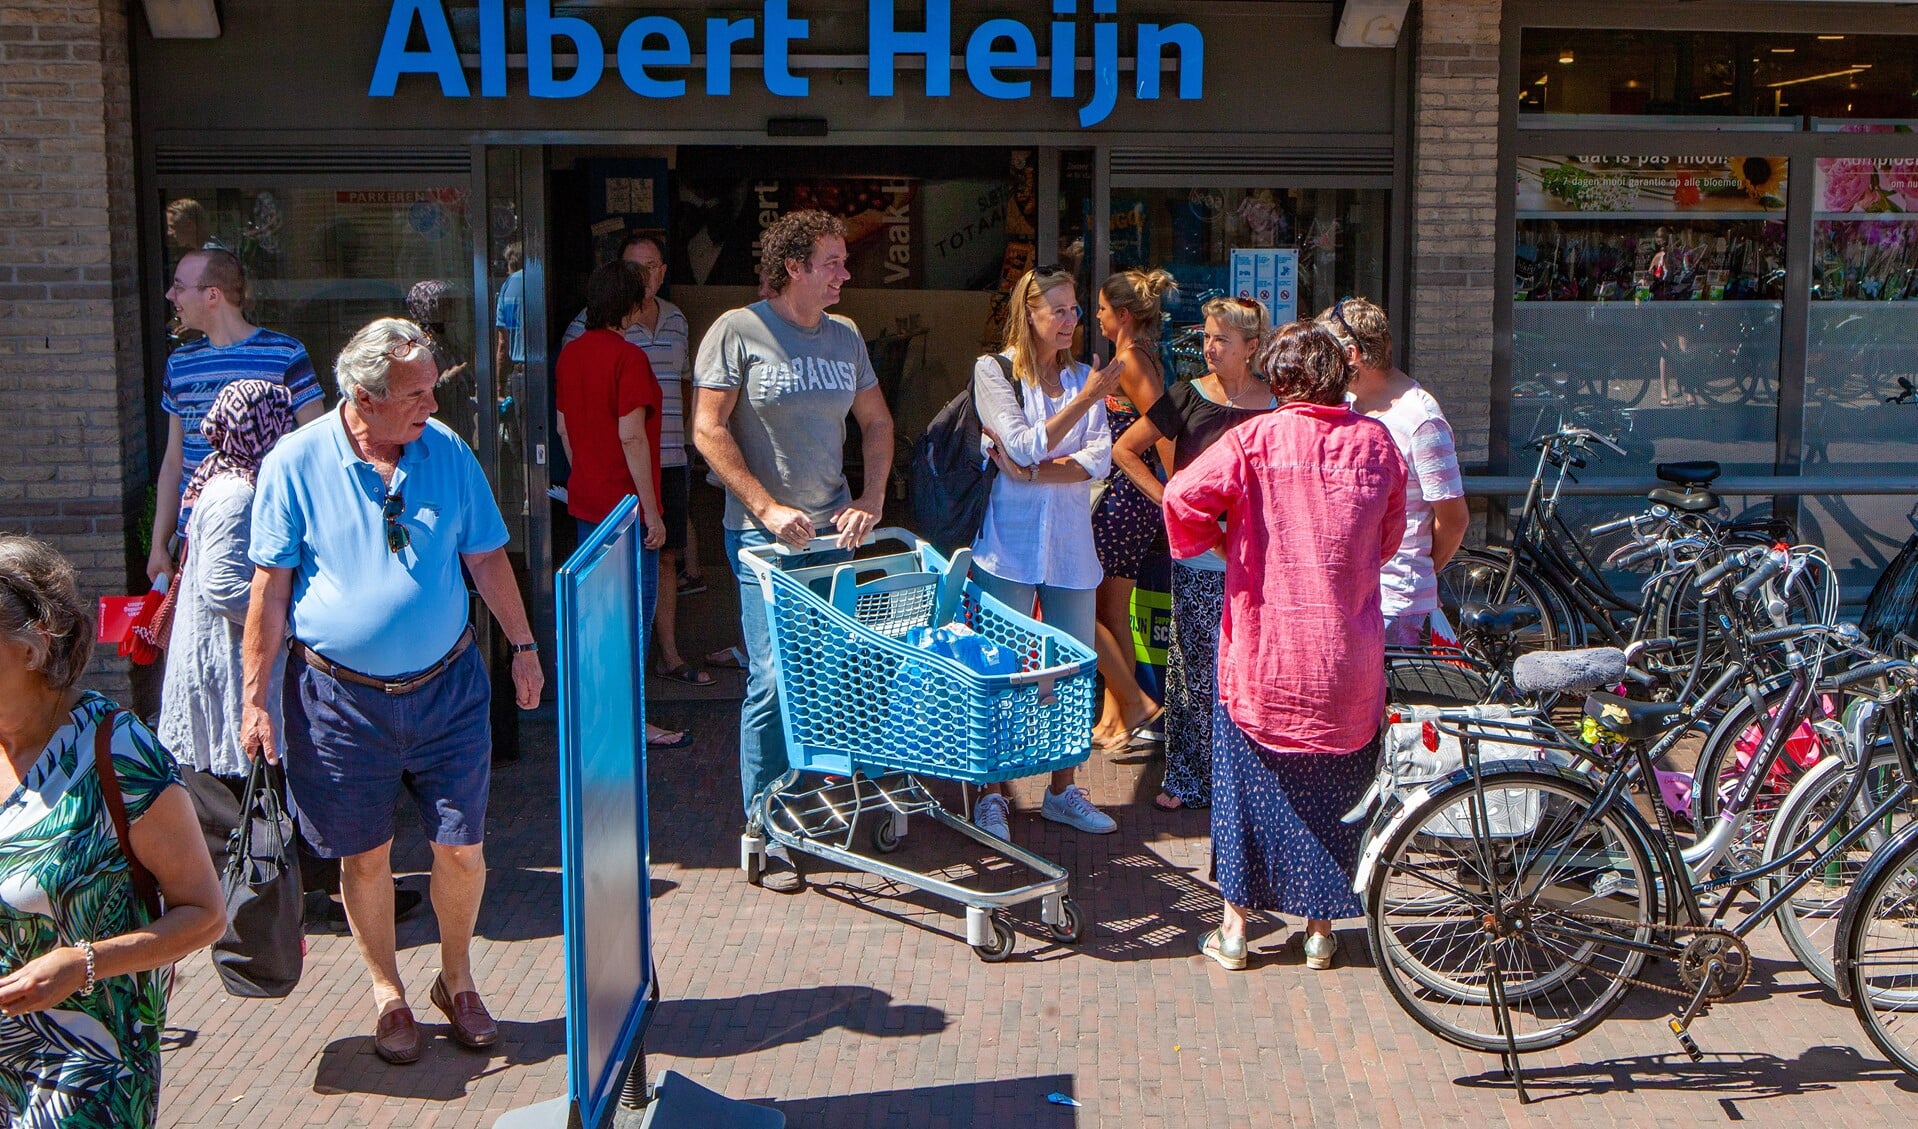 Wethouder Roland Boom (met winkelkar) en VVD-fractievoorzitter Jessica Prins rechts naast hem, gingen ook inkopen doen.